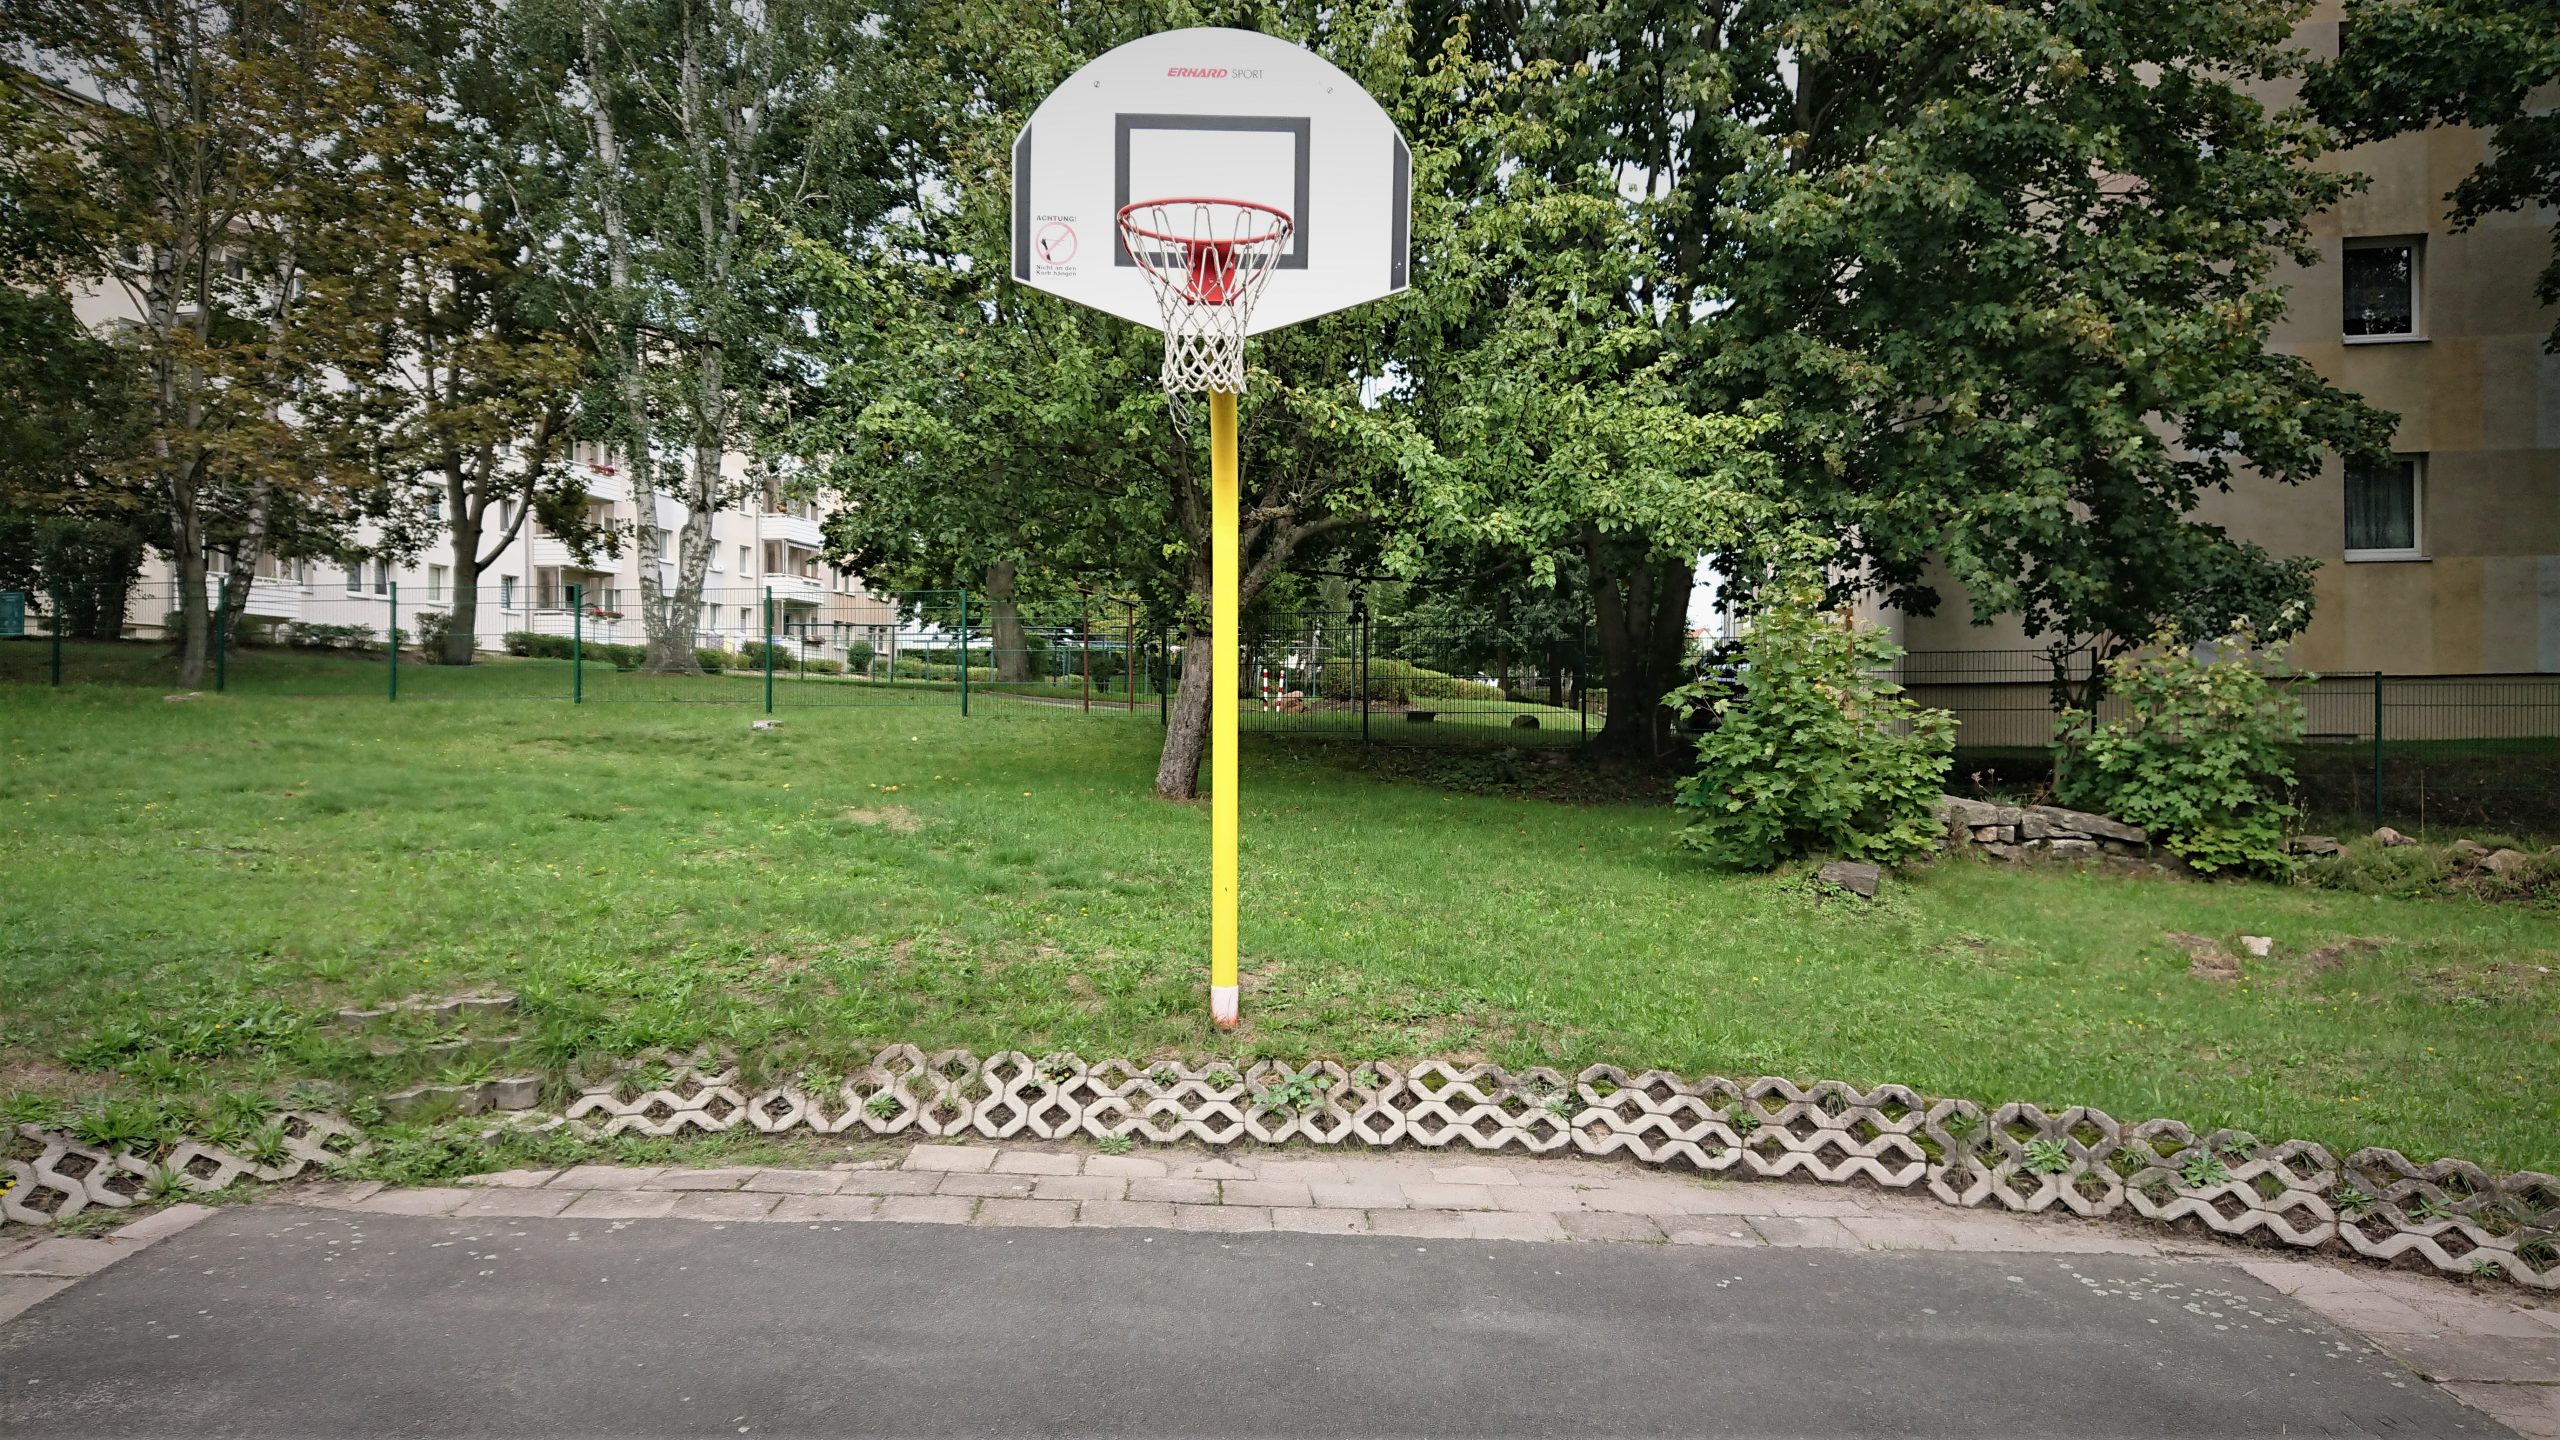 5 Basketball